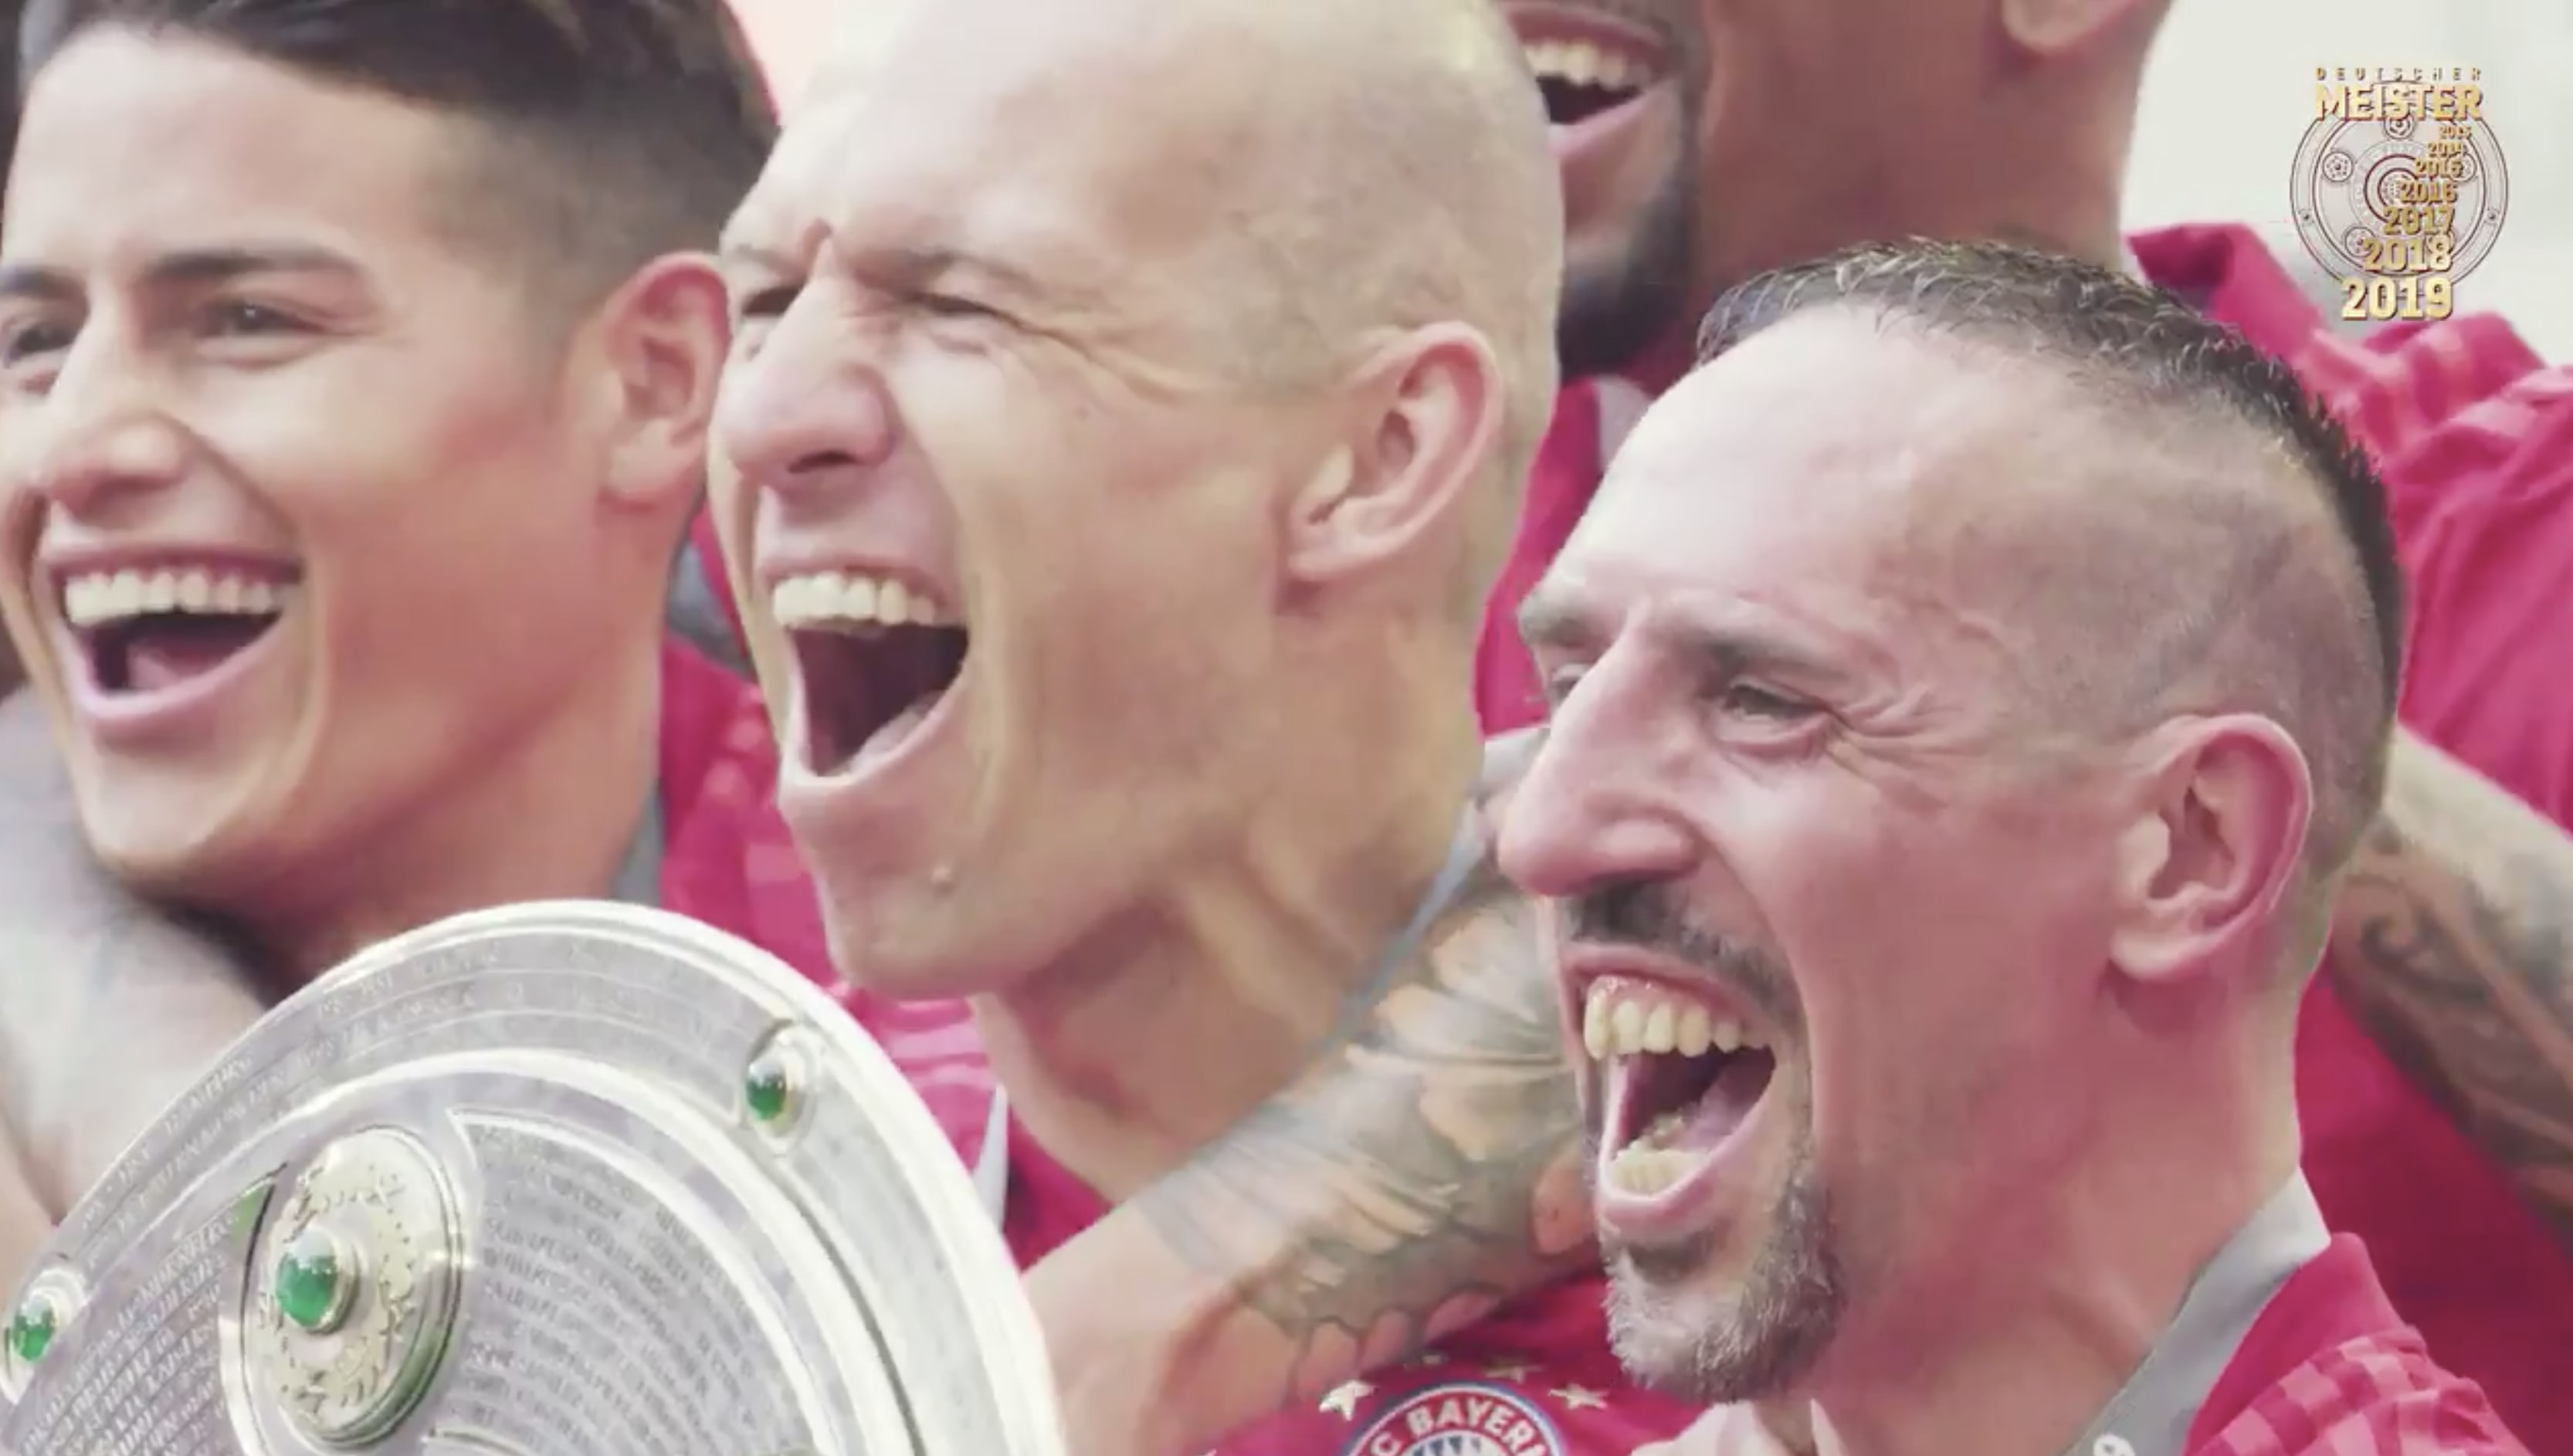 Bayern München neemt met prachtige video afscheid van Robben